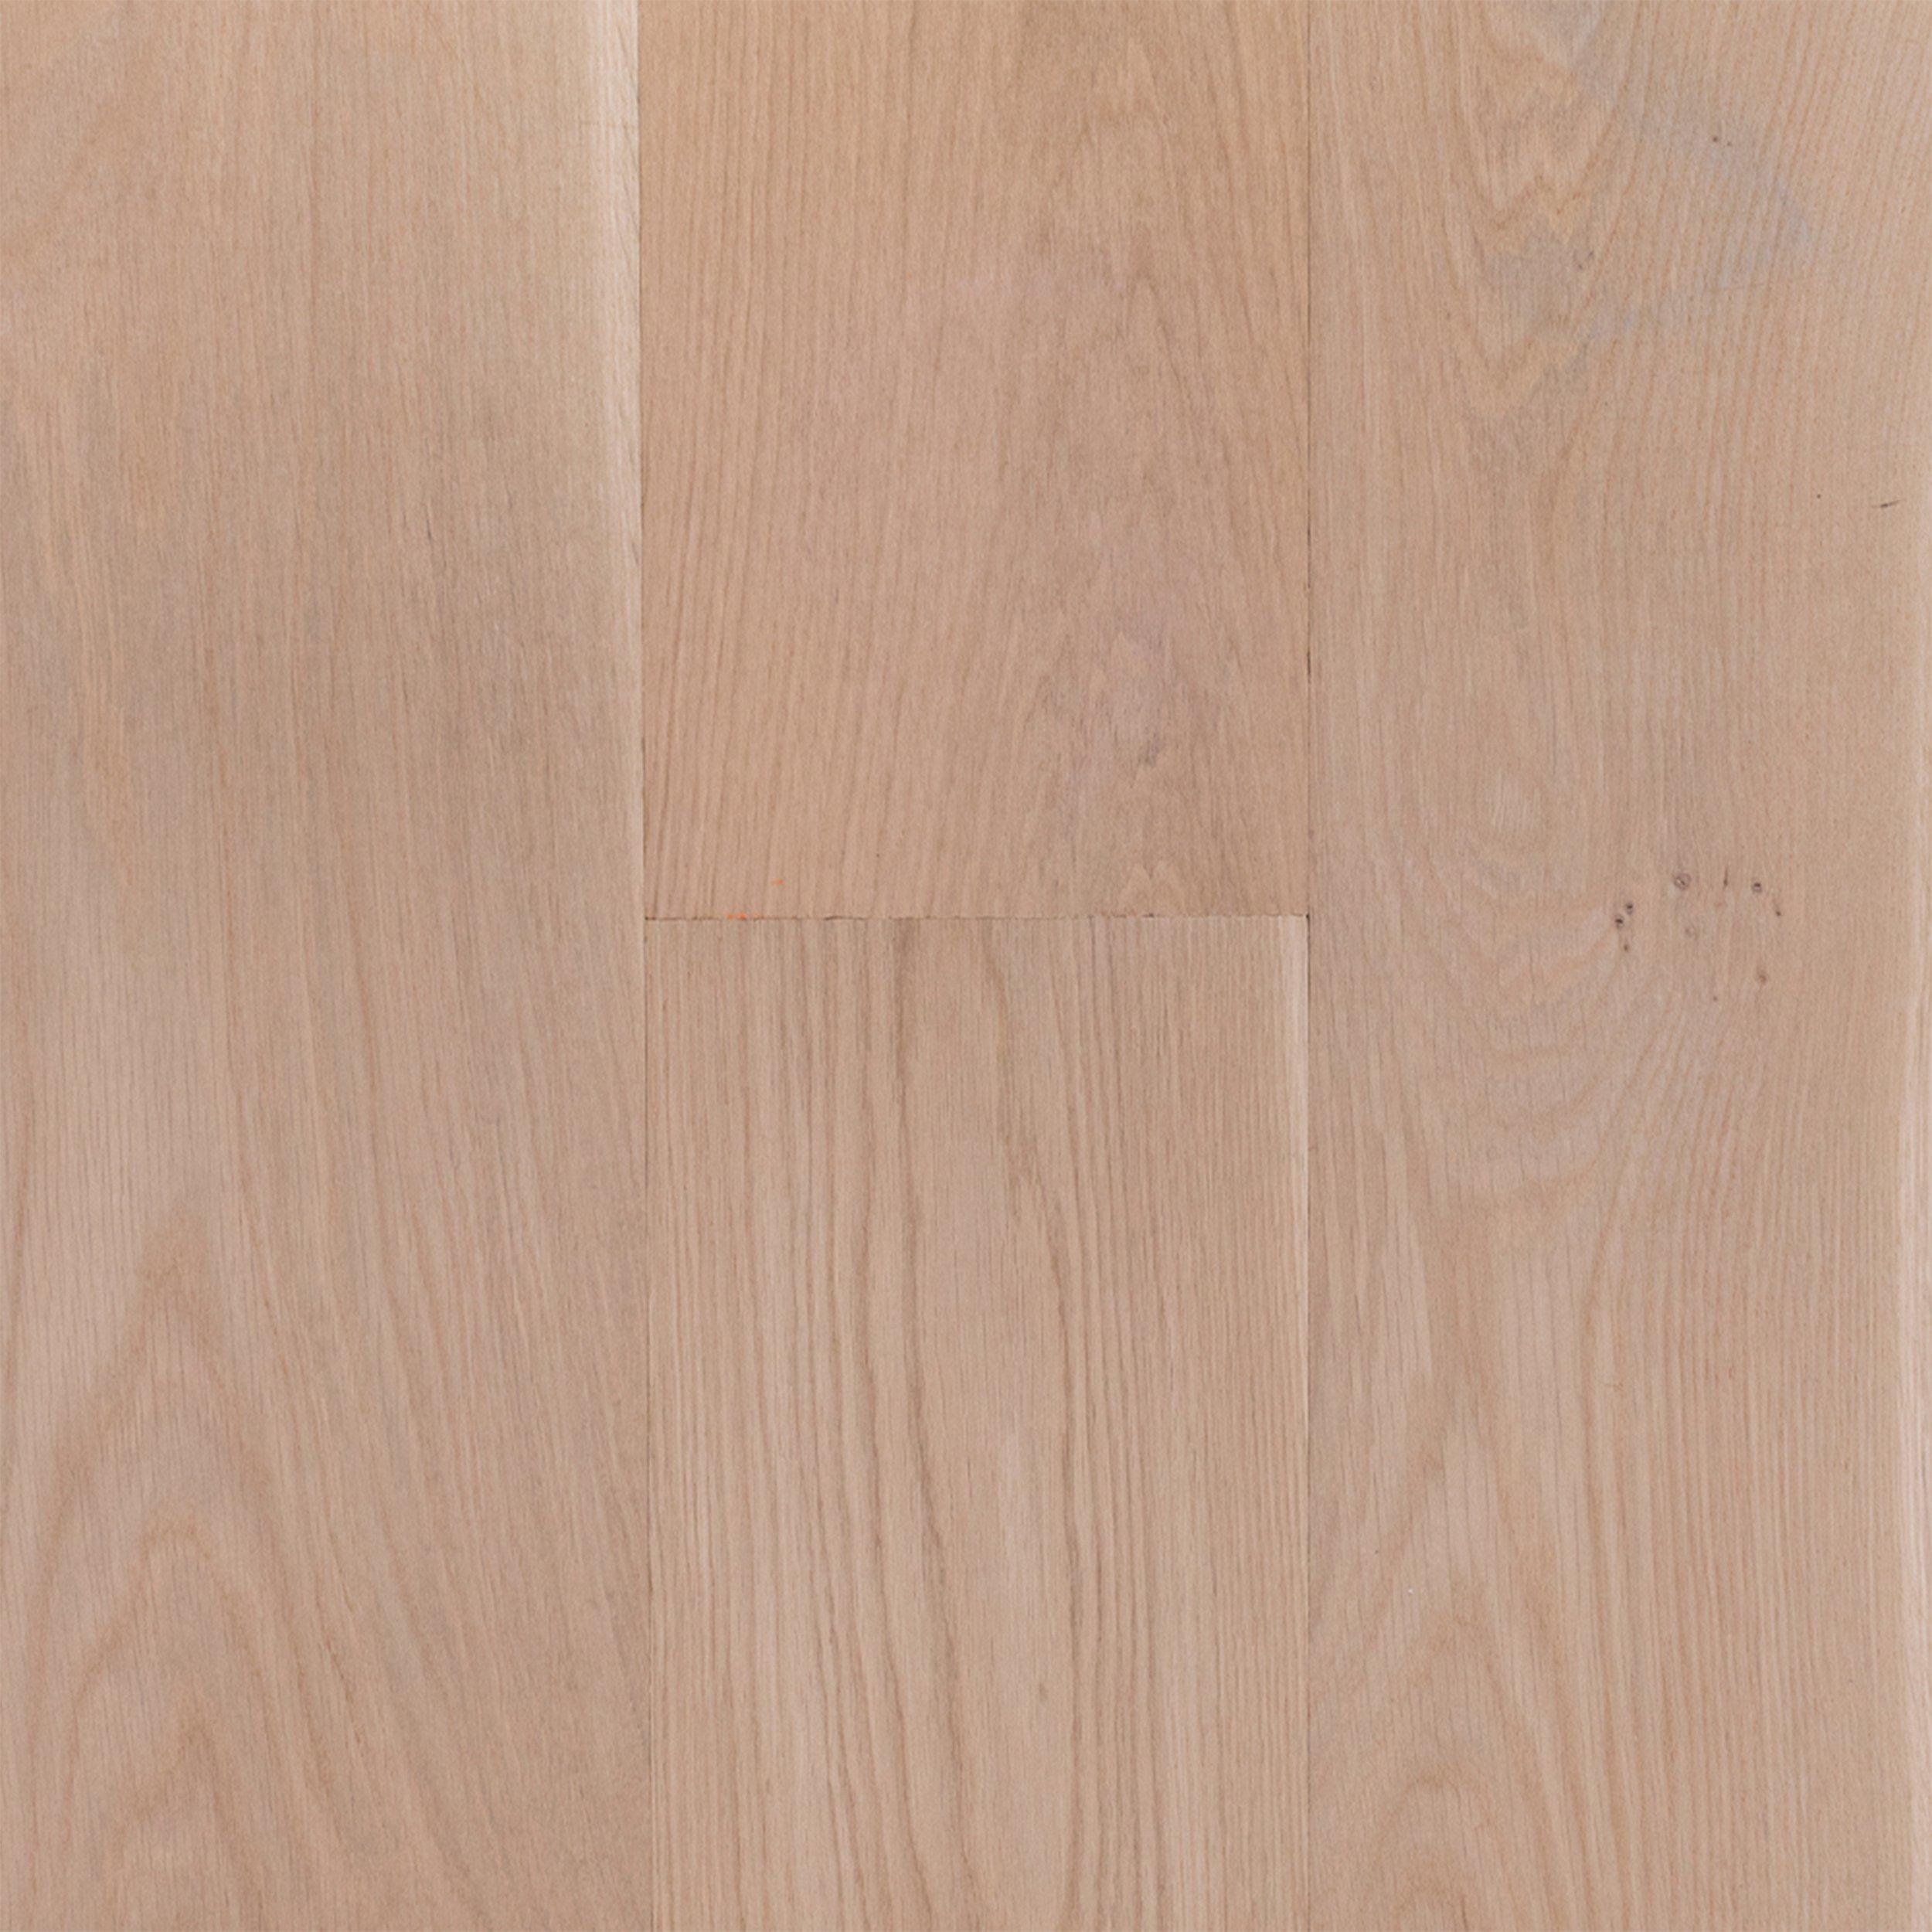 Unfinished White Oak Engineered, Engineered Hardwood Floor And Decor